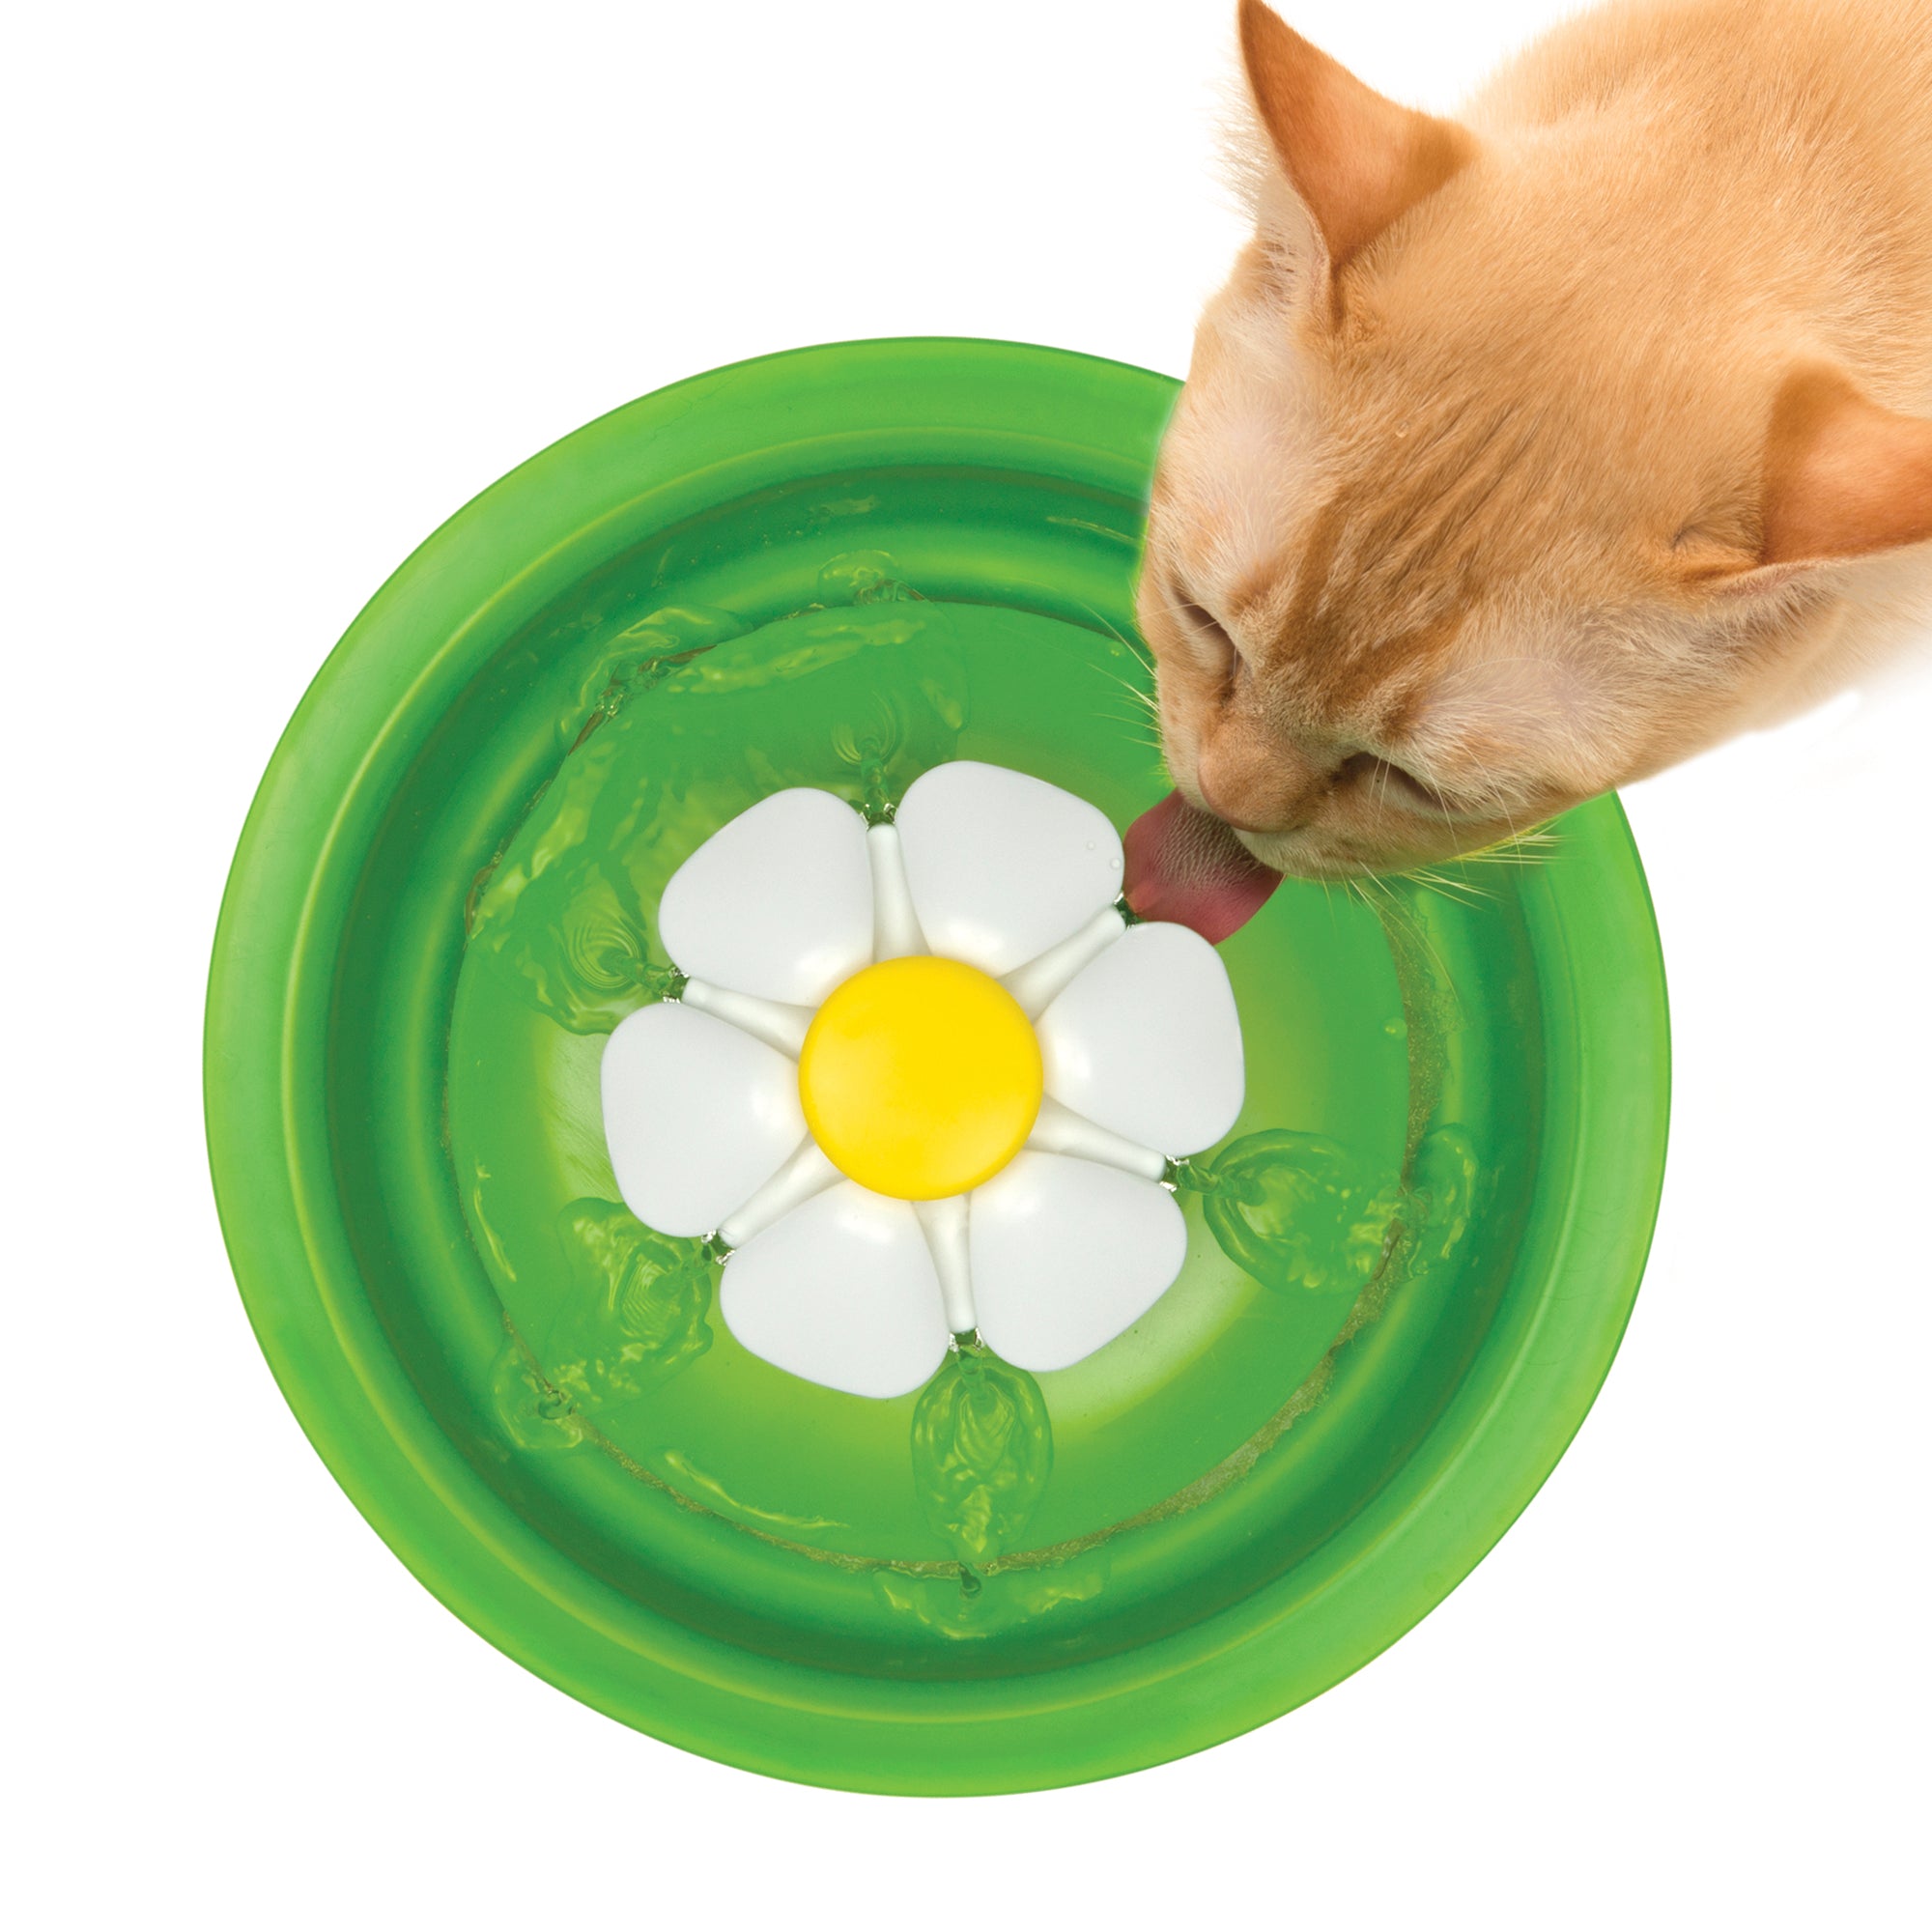 Vaporisateur d'herbe à chat Catit 2.0 – PetMax